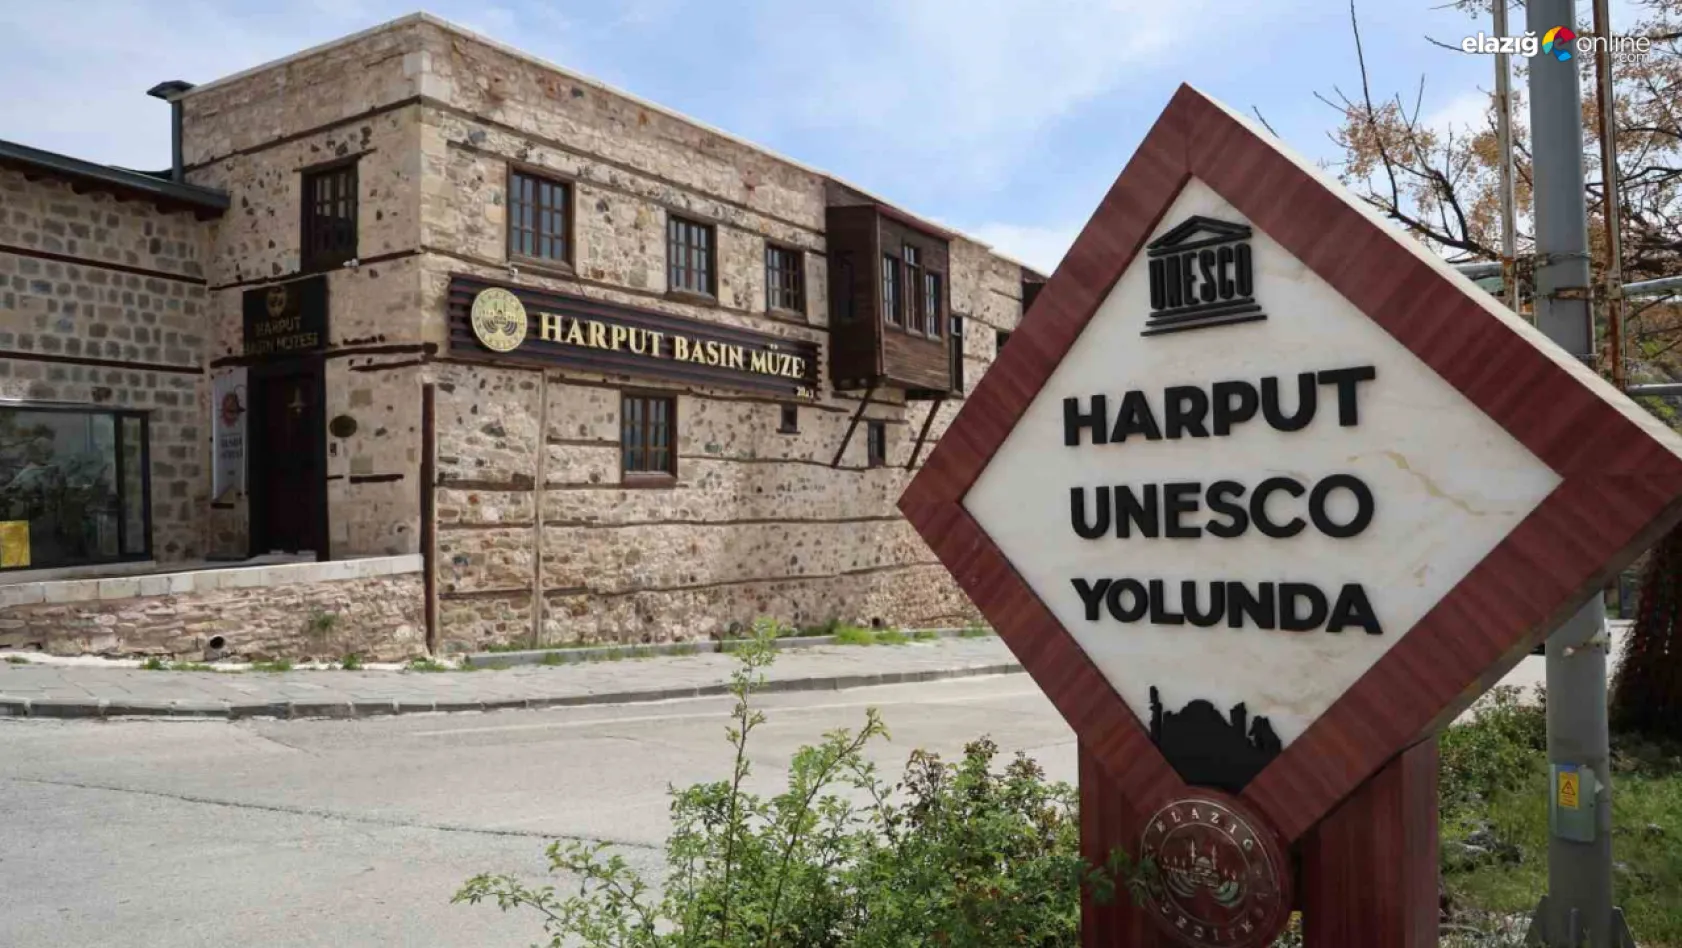 Harput Basın Müzesi'ne 9 günde 15 bin ziyaretçi